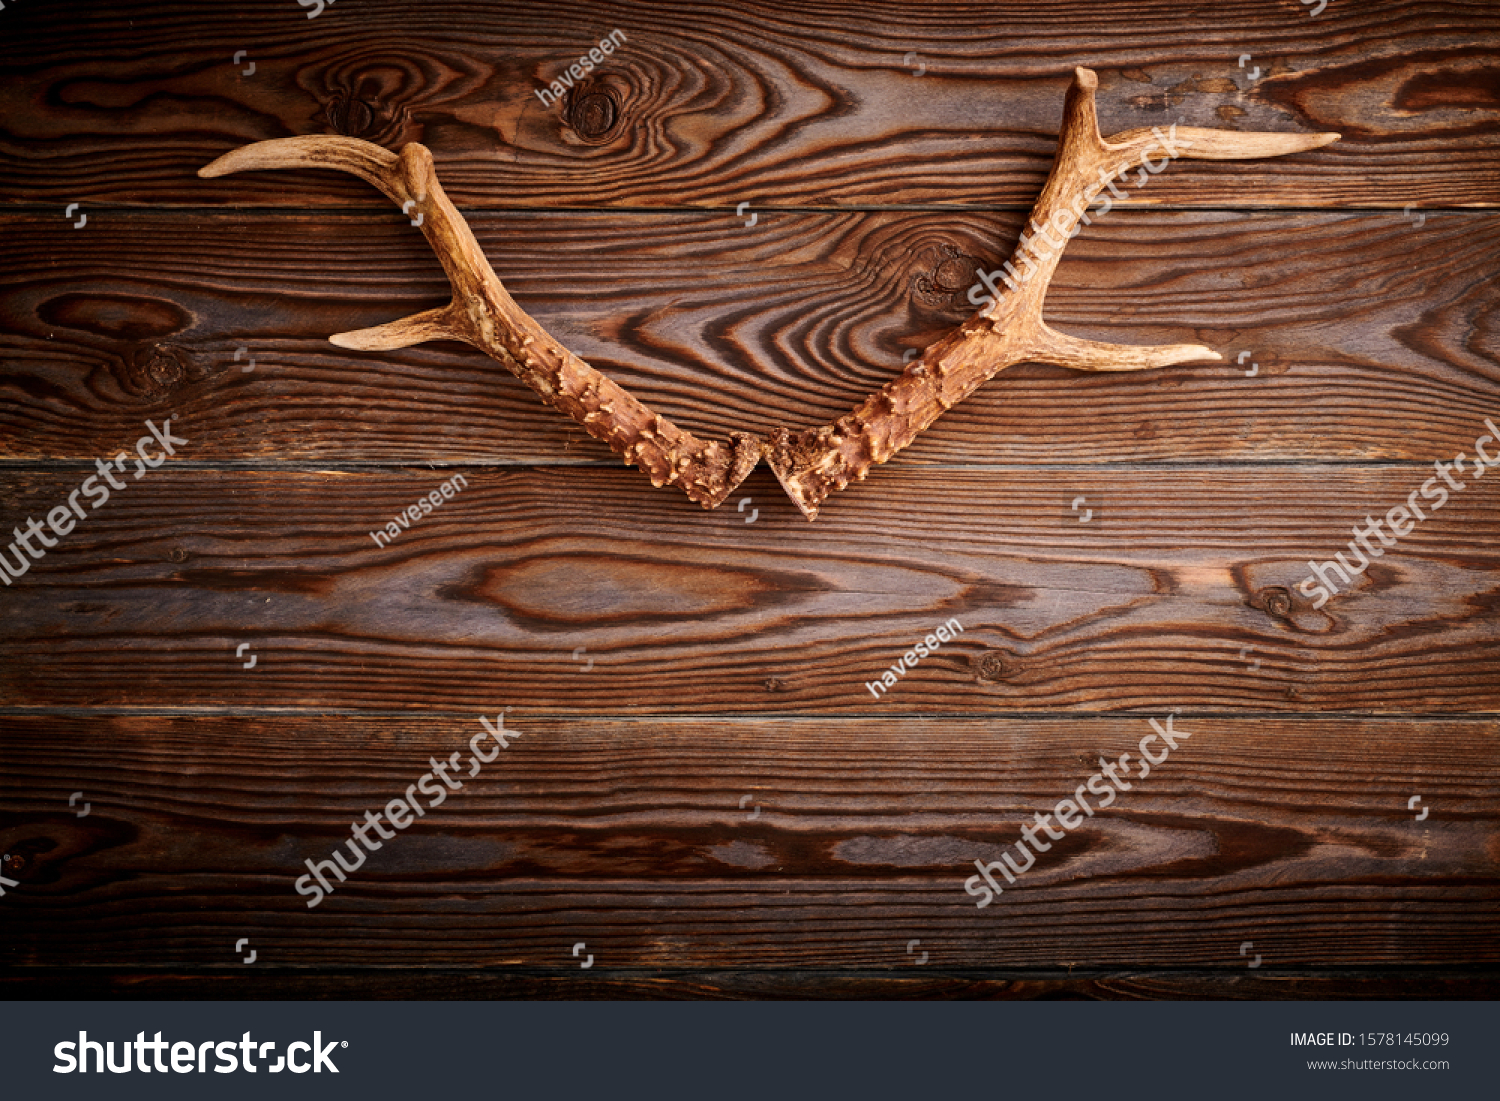 Deer antlers on vintage wooden background. Hunting concept.  #1578145099